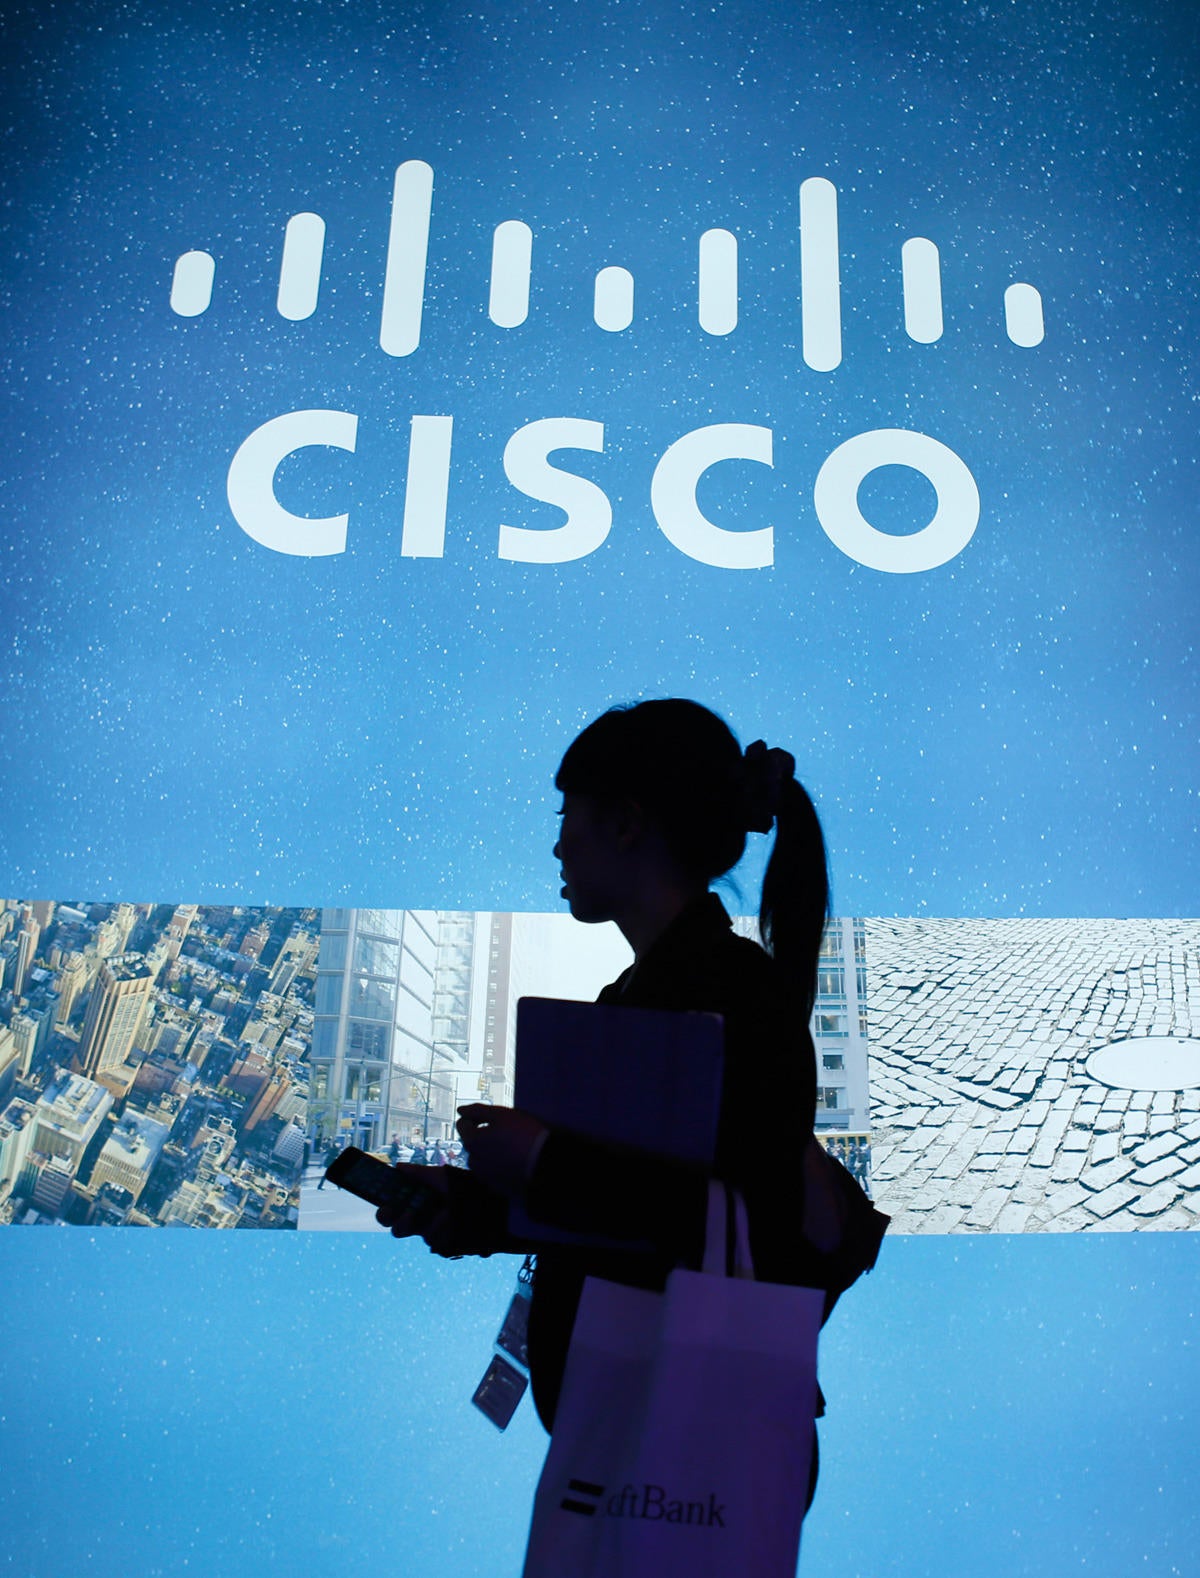 Cisco acquires IoT company Jasper $1.4 billion